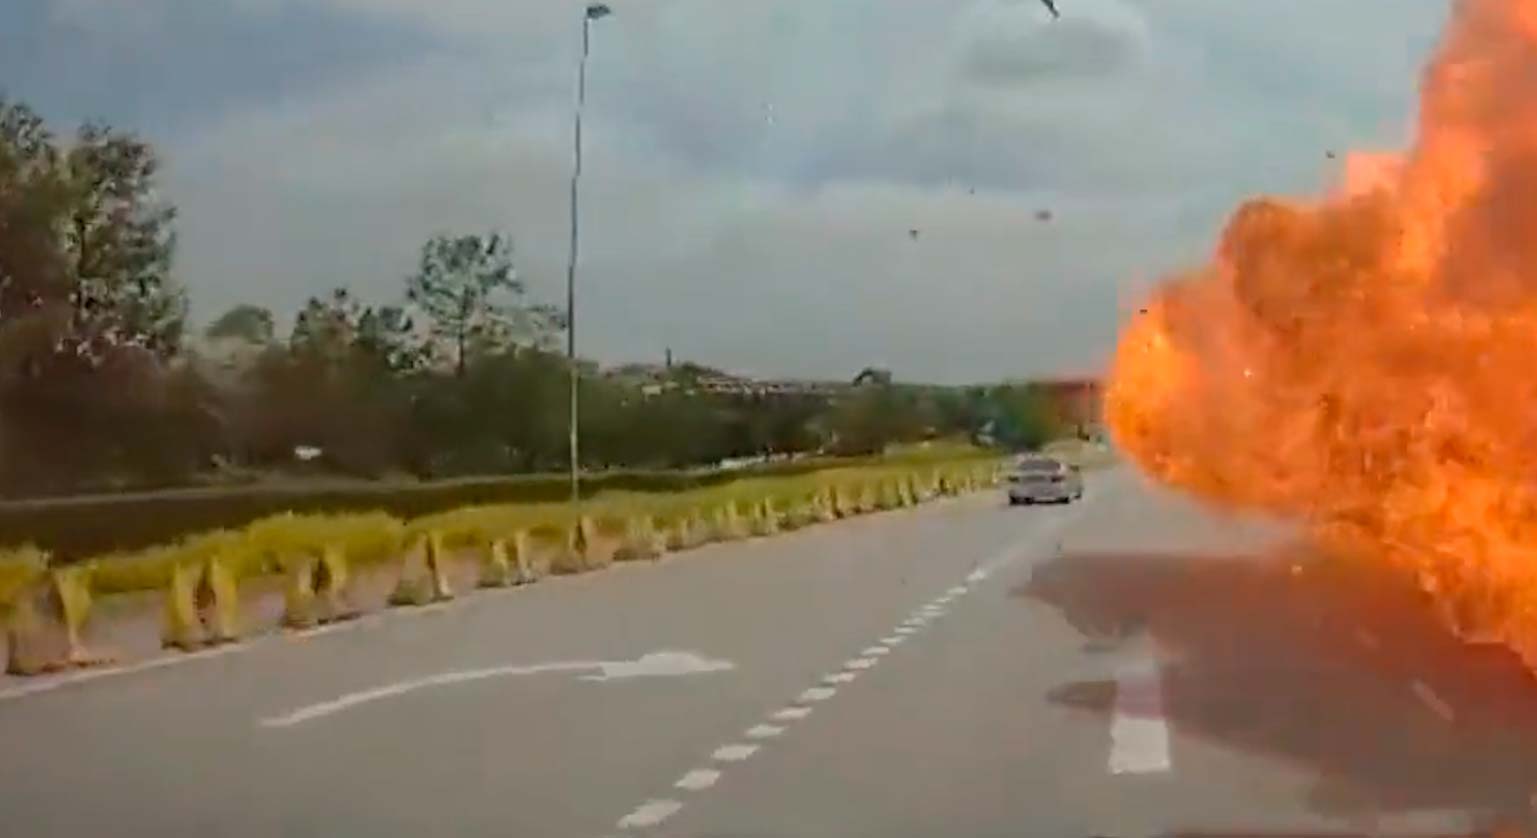 Wideo: Samolot rozbija się na samochód i motocykl na autostradzie, eksploduje, zabijając 10 osób. Zdjęcie: Twitter @SoyaCincauBM i @hoje_no